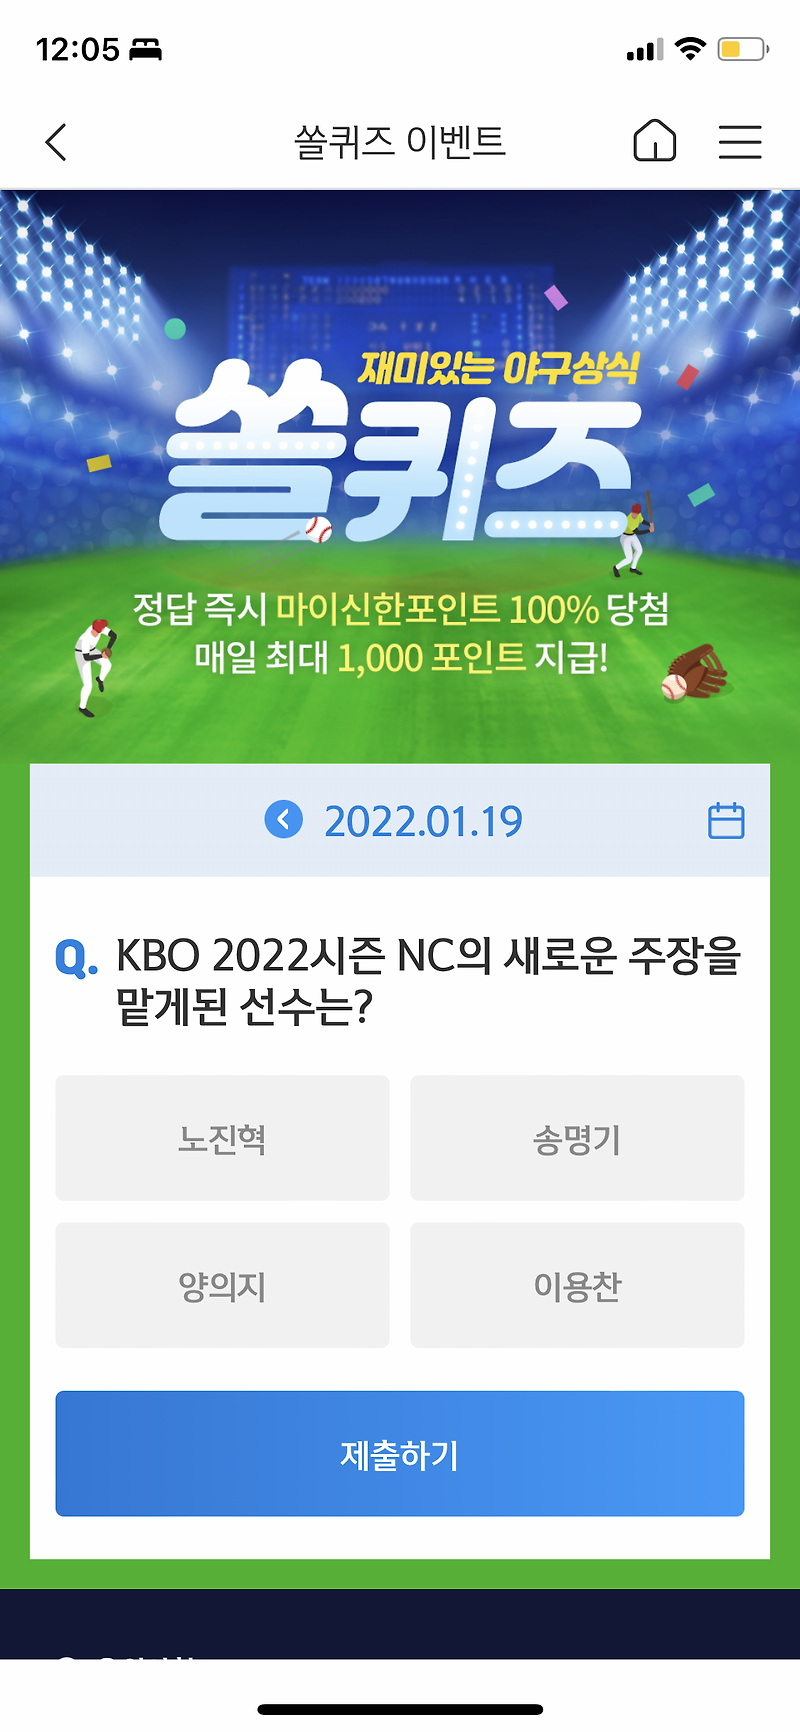 신한 쏠야구 퀴즈 1월 19일 정답: KBO 2022 시즌 NC의 새로운 주장은?